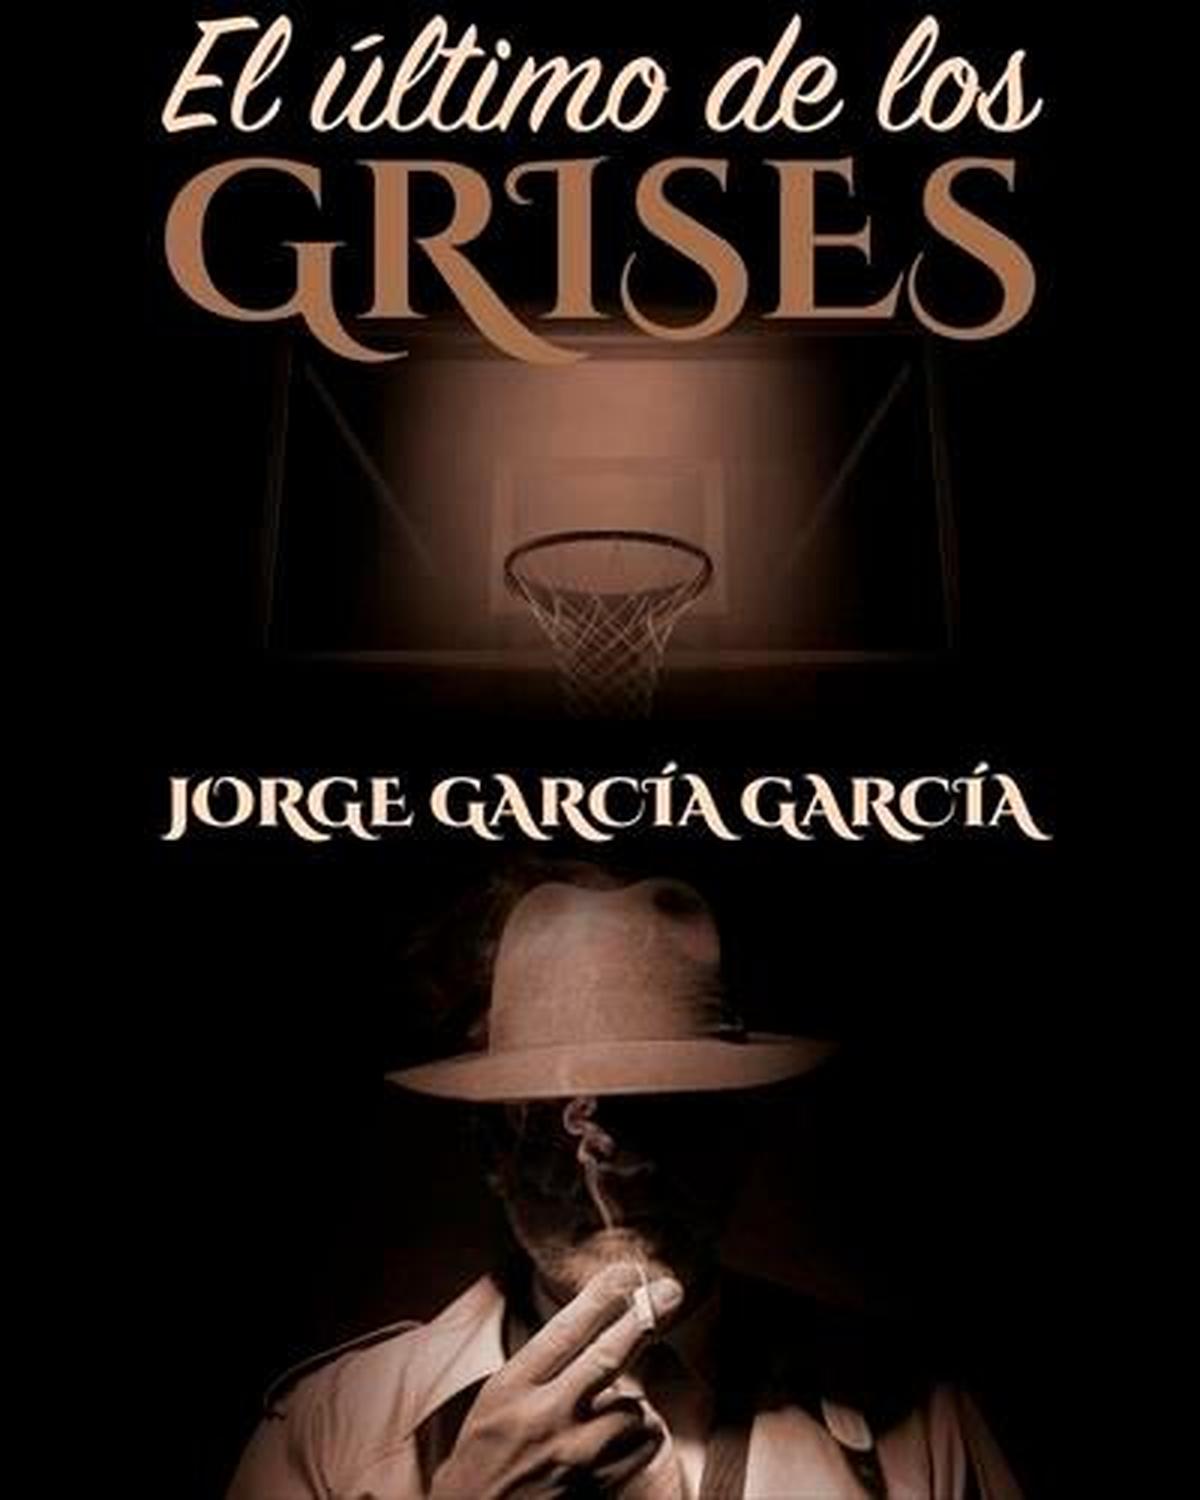 Portada del libro ‘El último de los grises’ de Jorge García García.